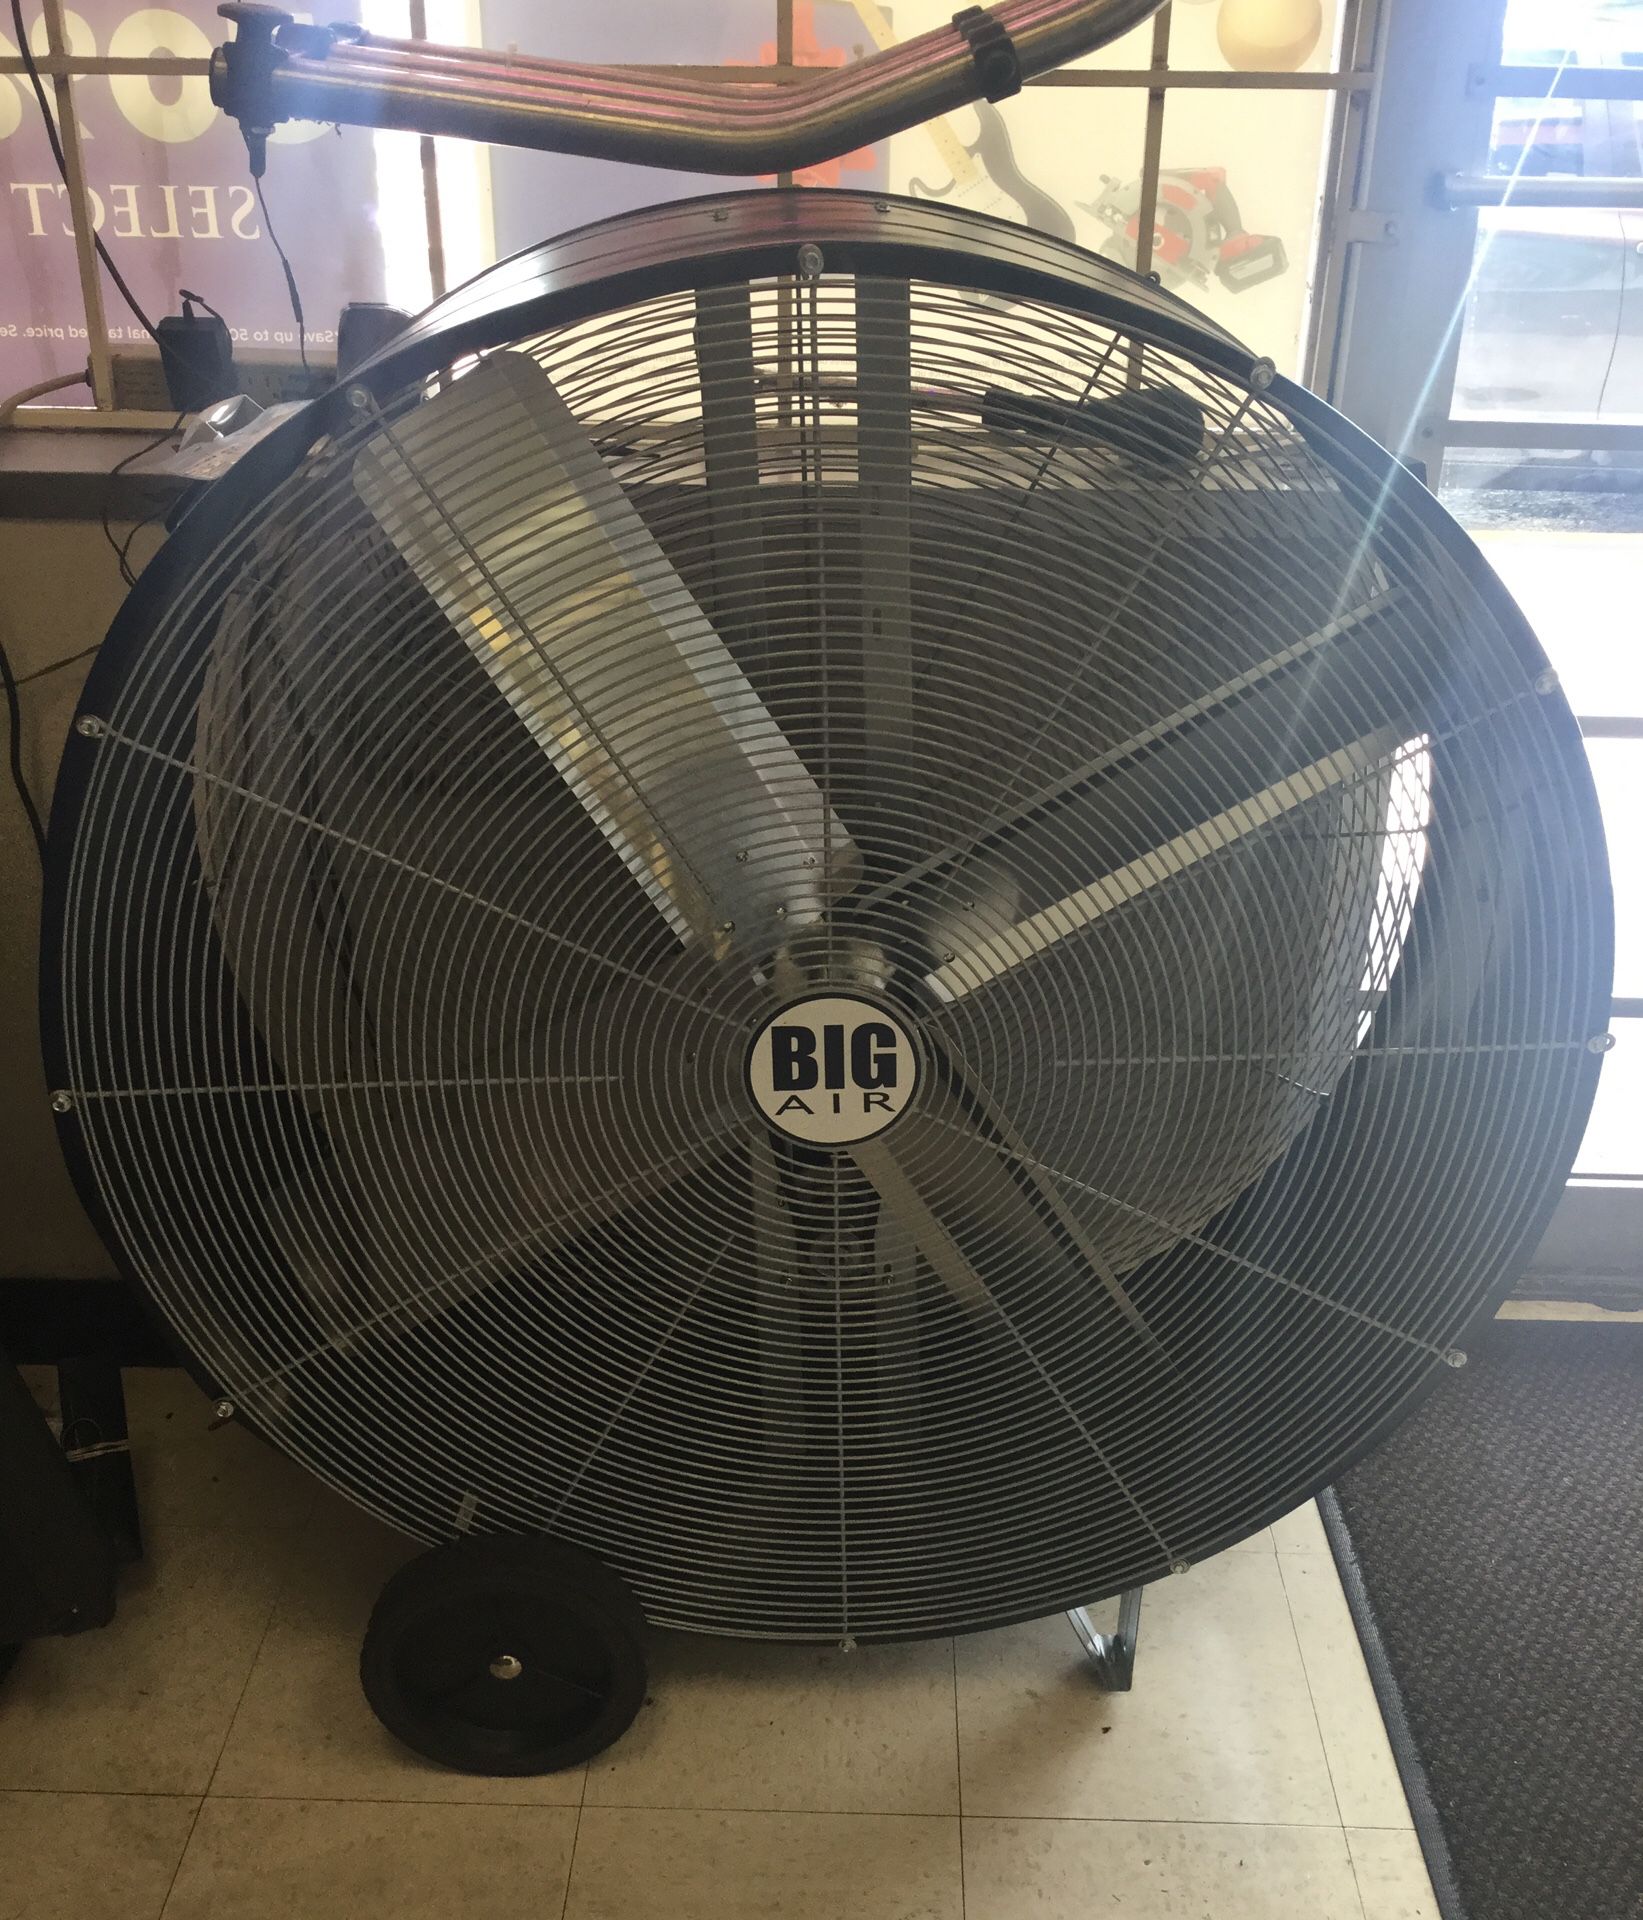 Big air shop fan